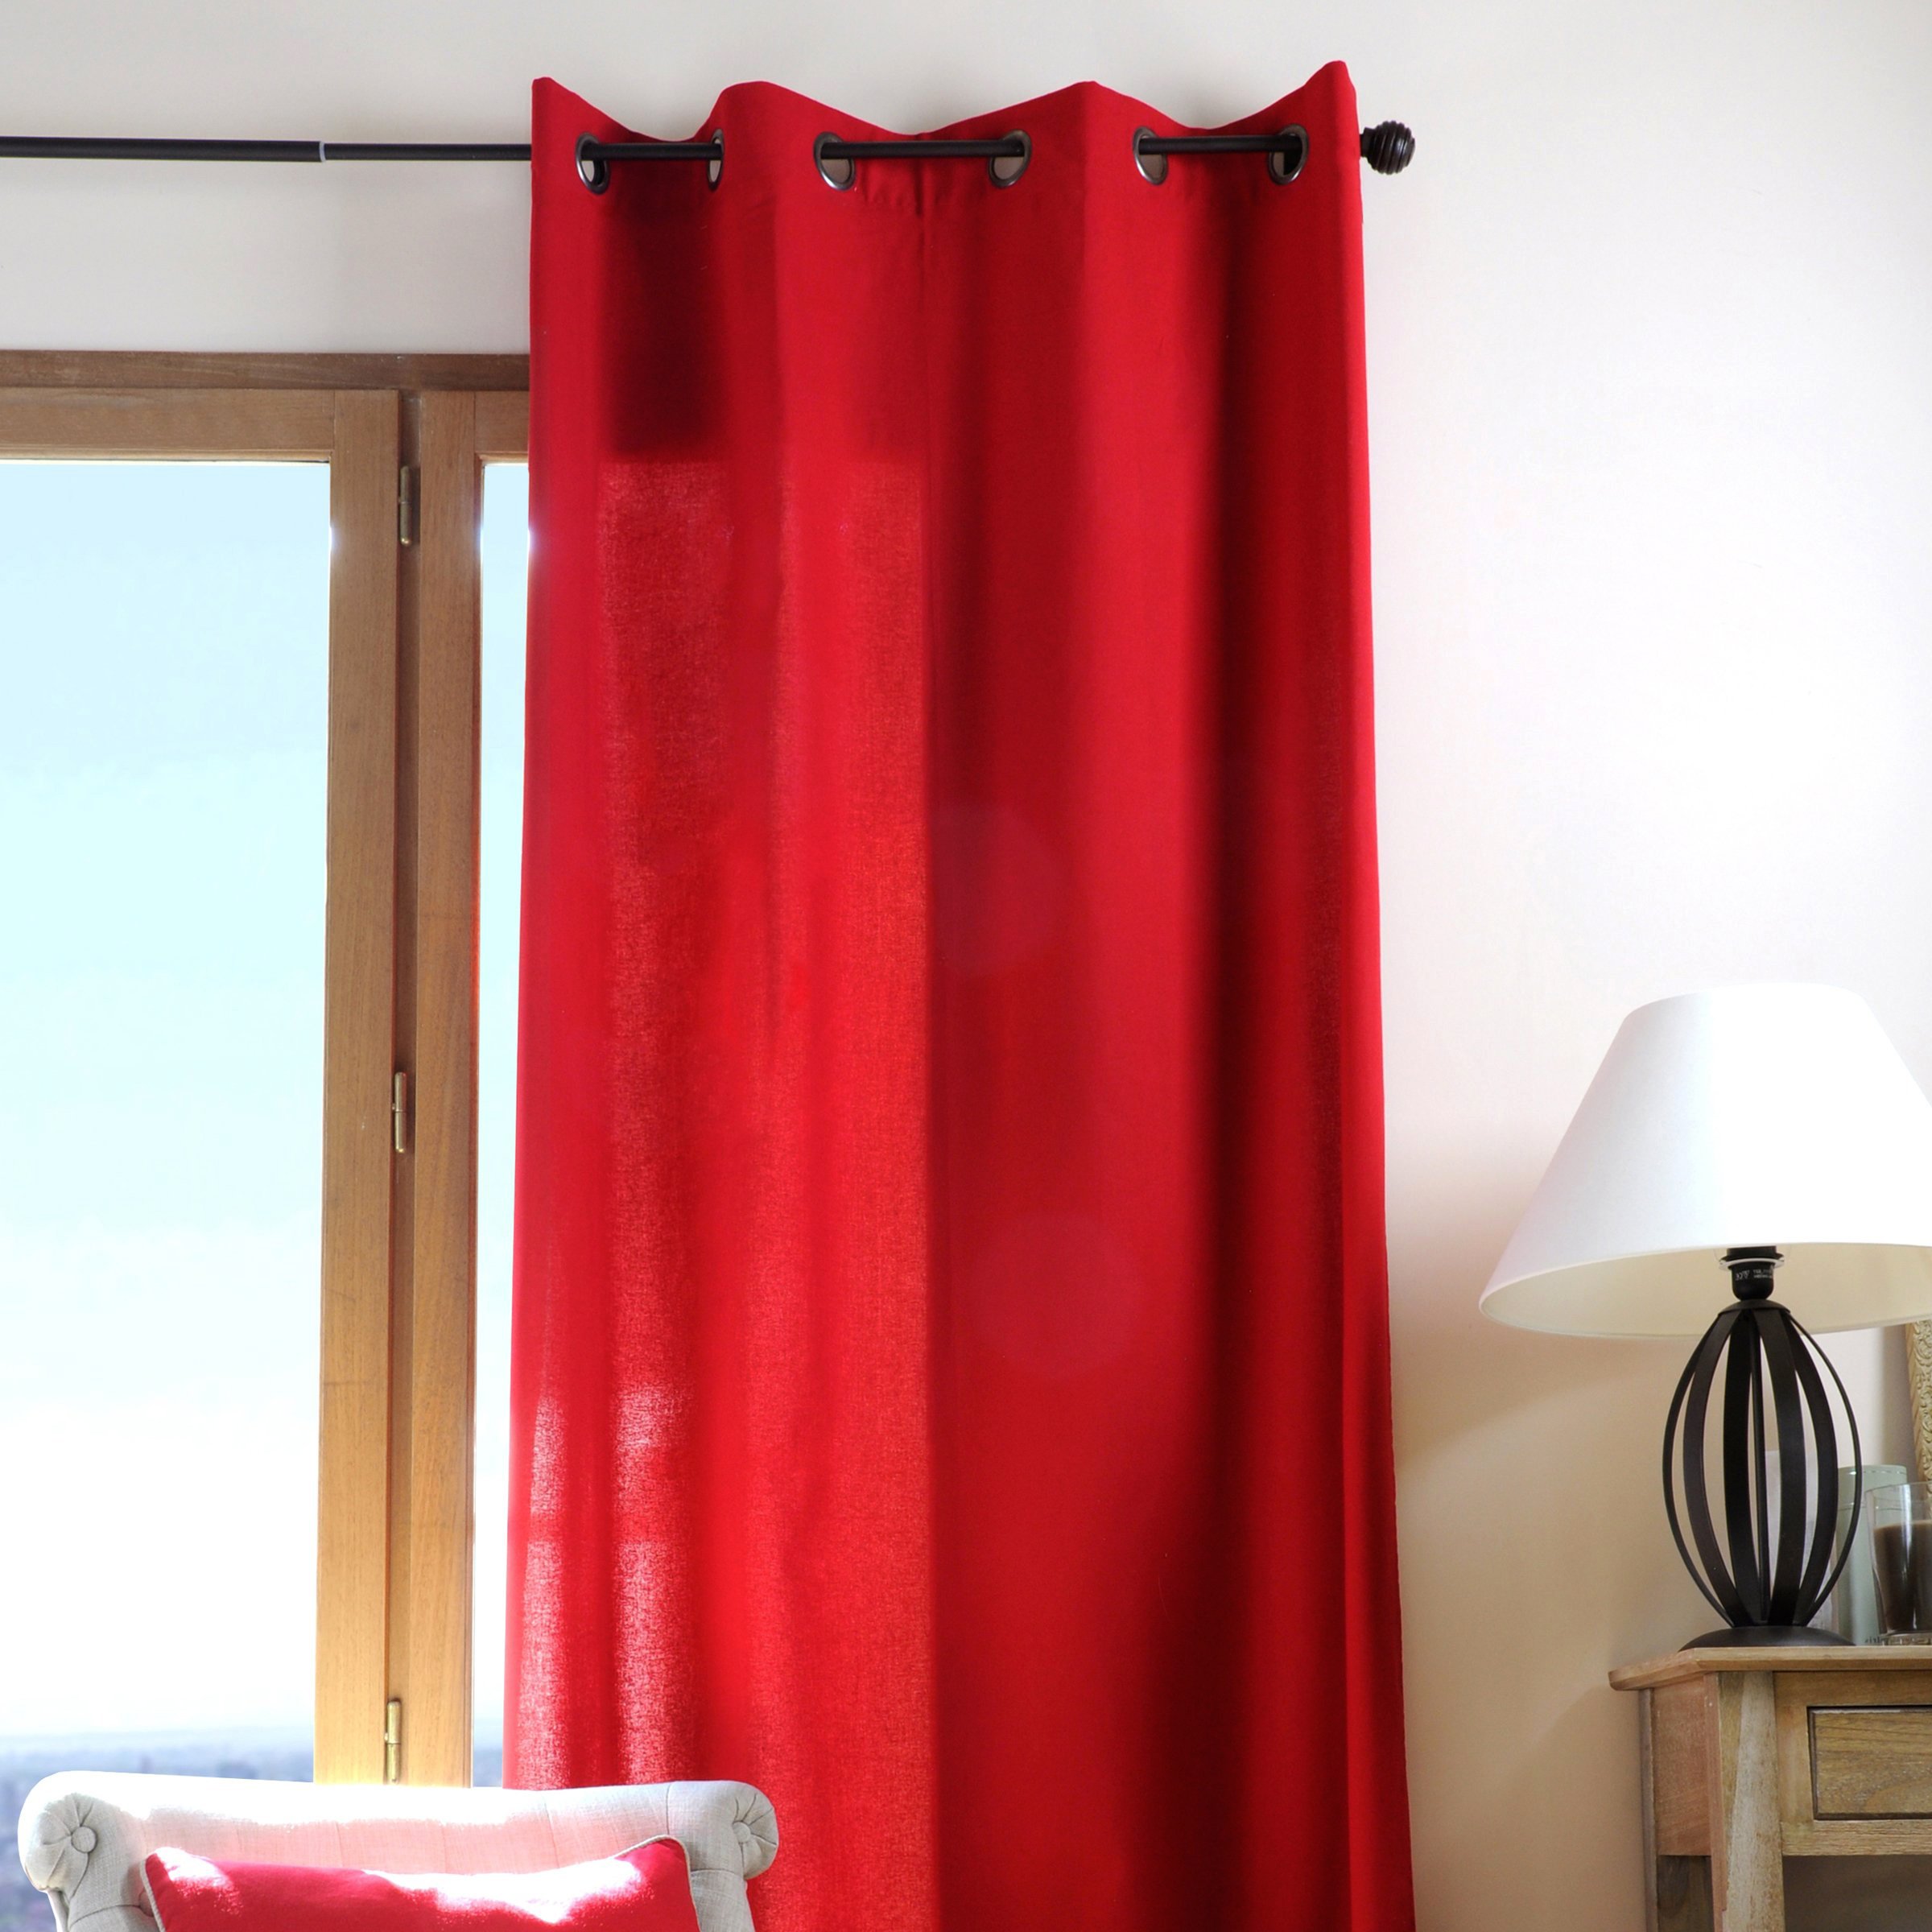 Vorhang aus gewaschener Baumwolle (135 x 240 cm) Linette Rosa - Gardinen / Vorhänge / Rollos ...